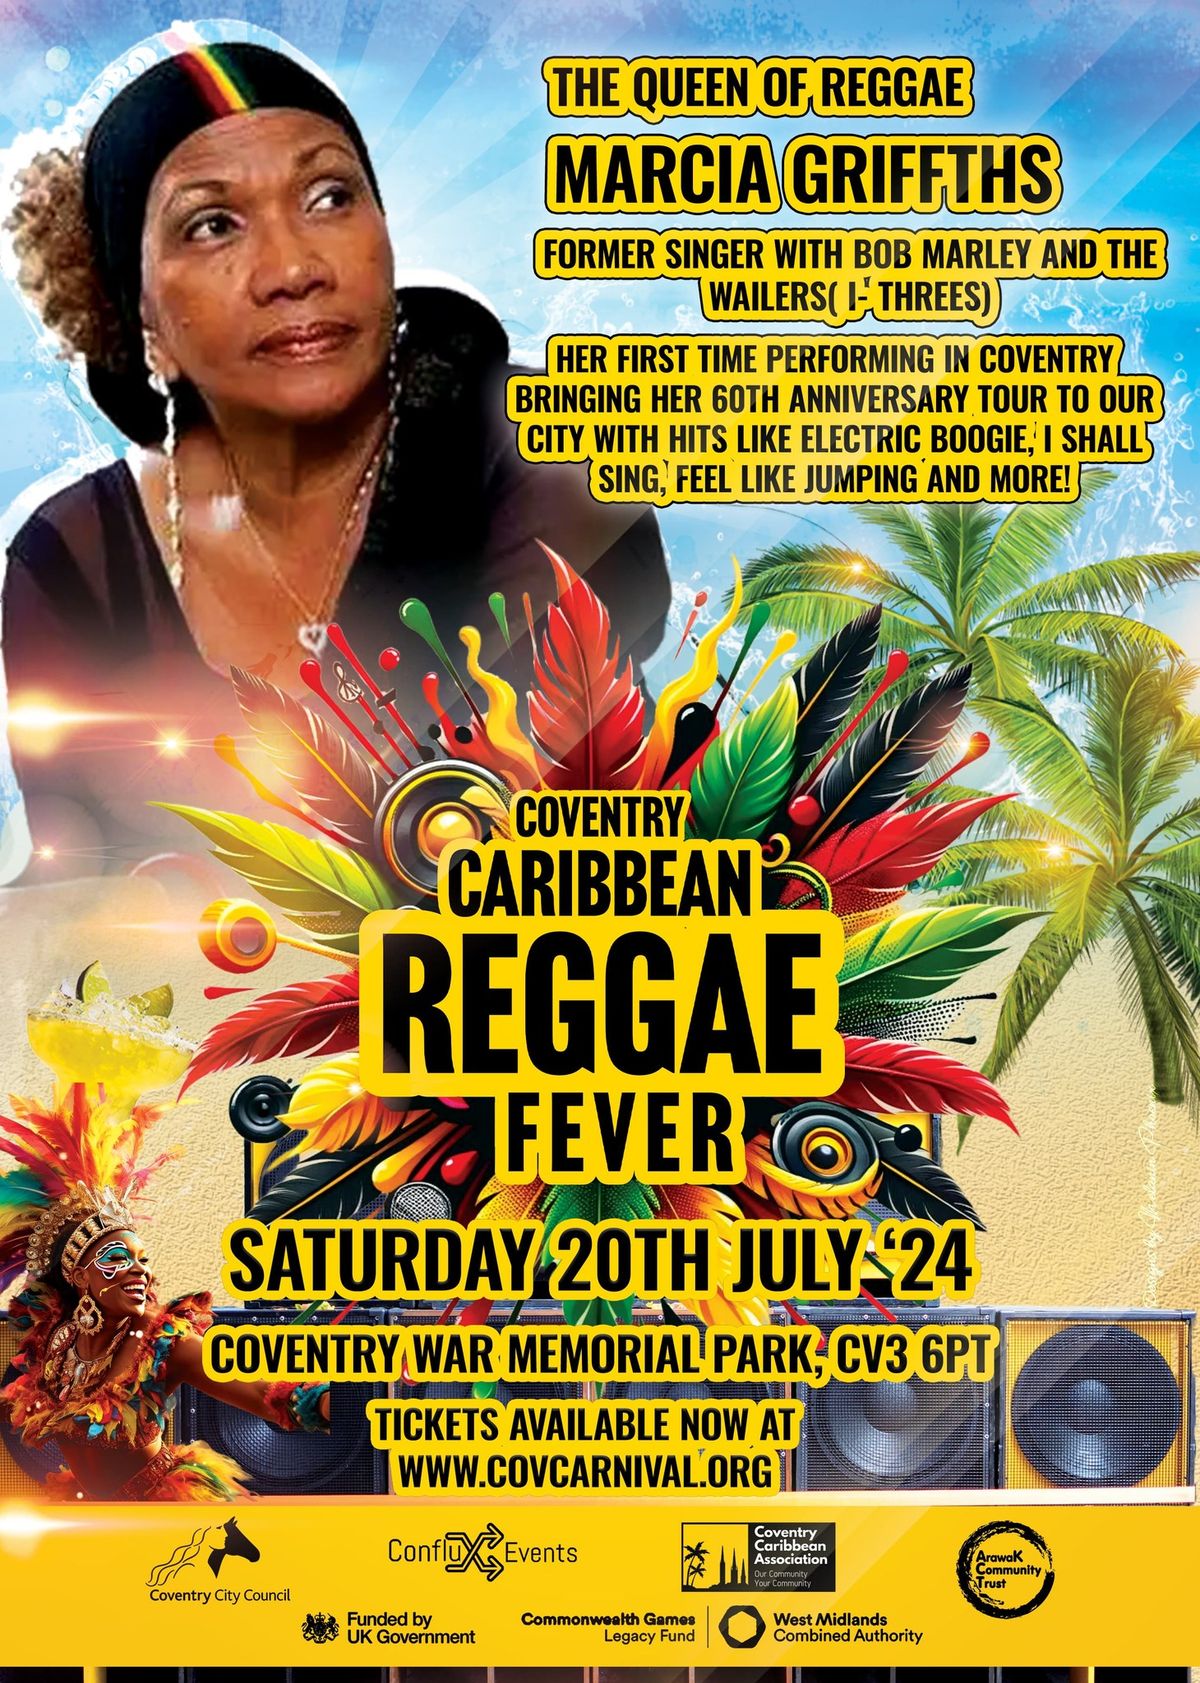 Coventry Caribbean Reggae Fever